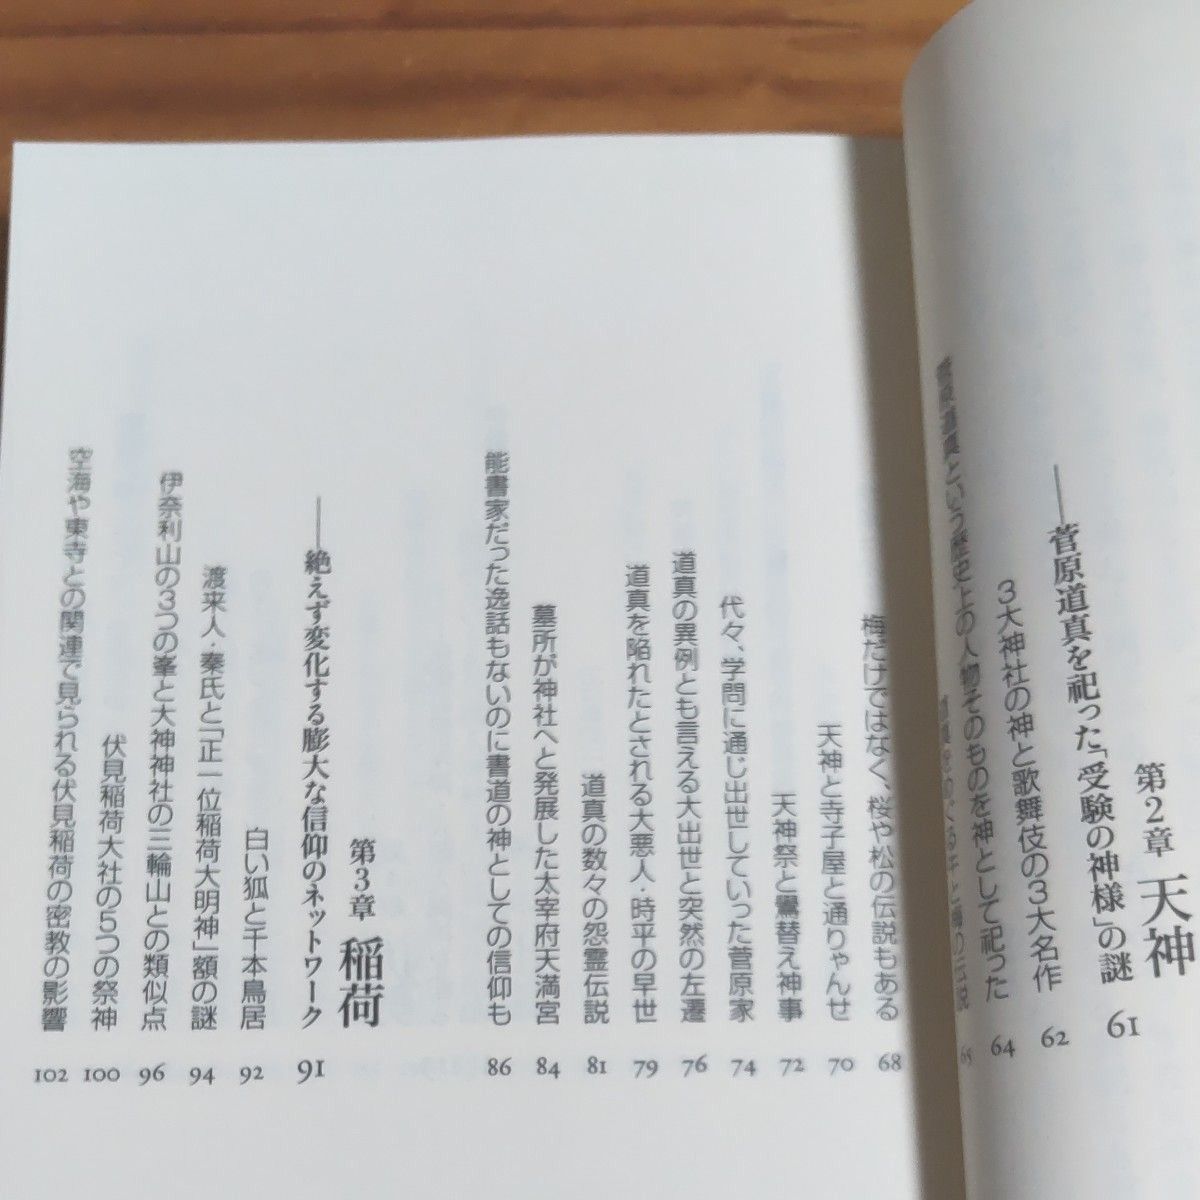 島田裕巳／著 『なぜ八幡神社が日本でいちばん多いのか』ベストセラー 新書   全296ページ   ワンオーナー  帯付き   美本